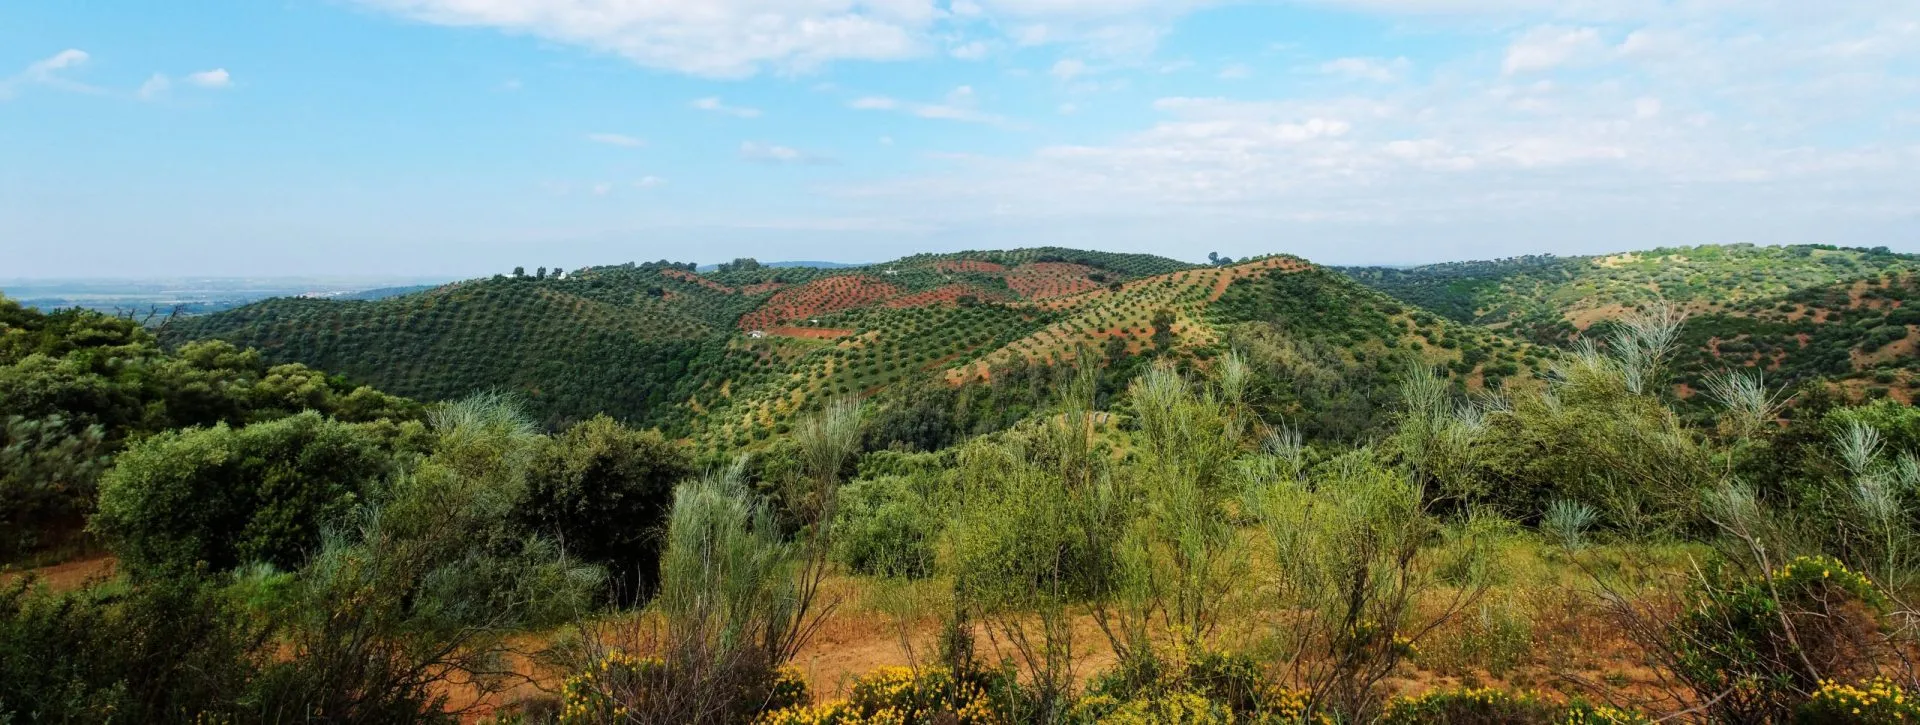 Malerisk middelhavslandskab med bakker dækket af oliventræer nær La Brena reservoir i Spanien